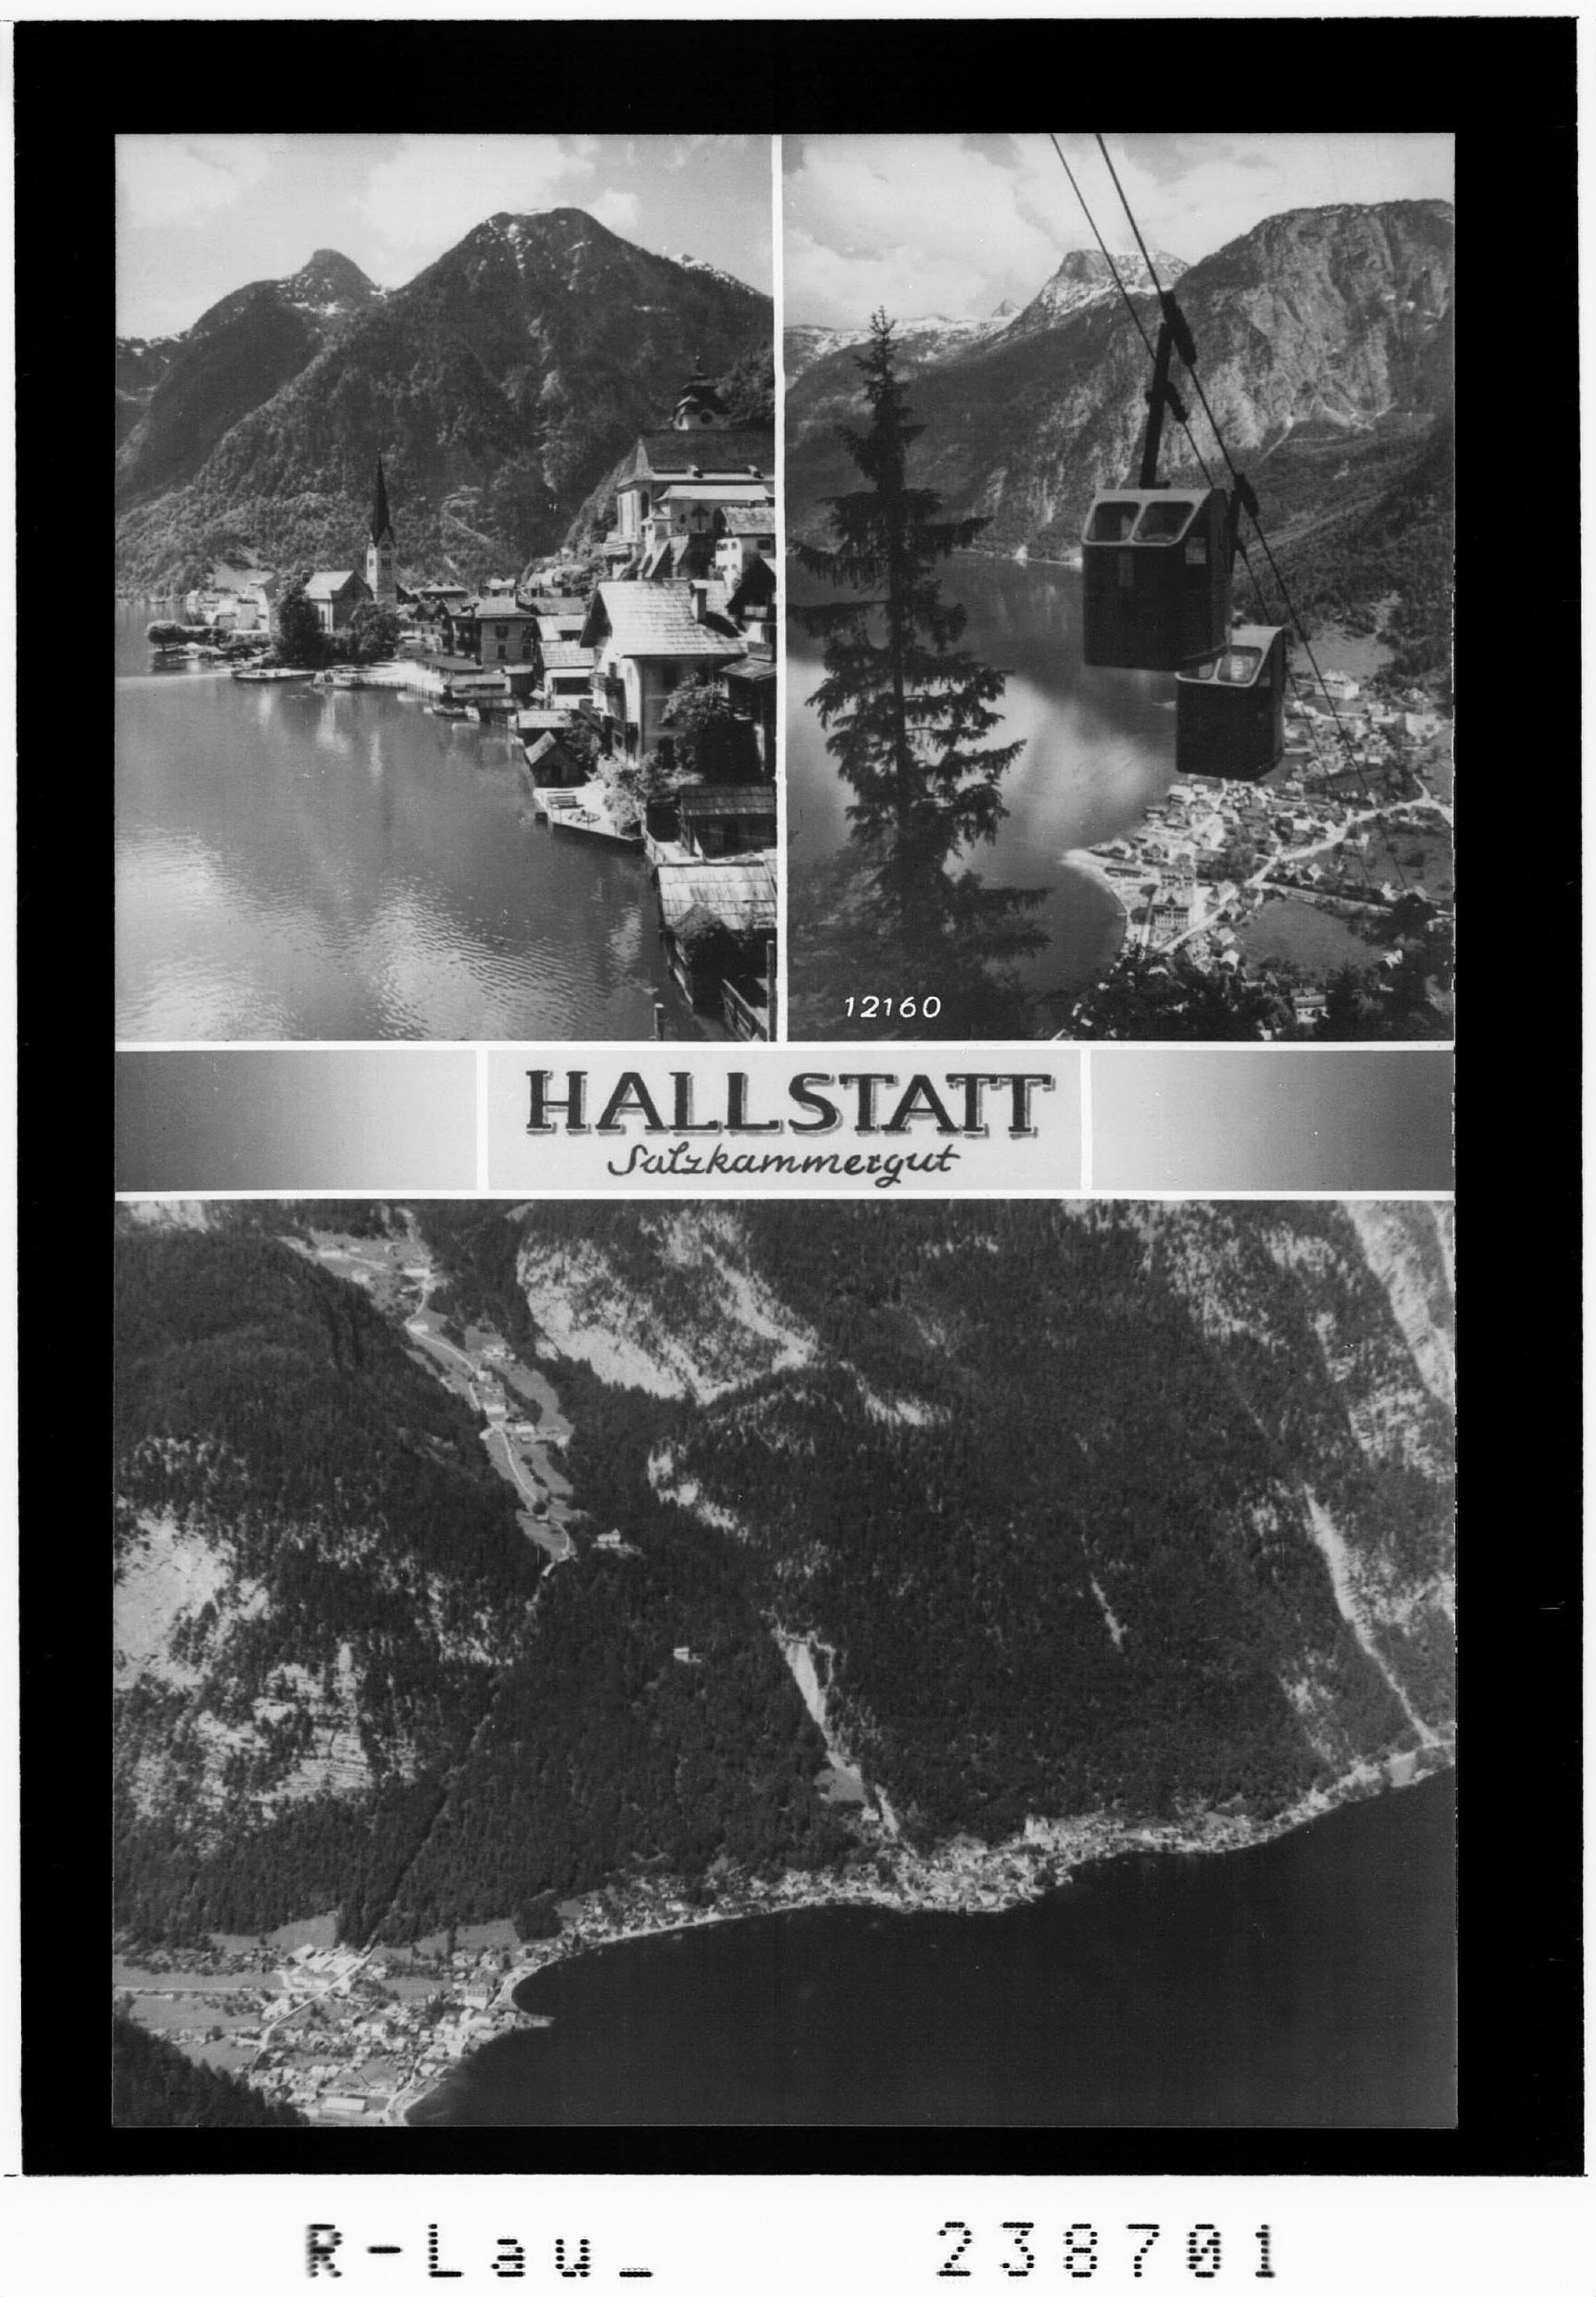 Hallstatt / Salzkammergut></div>


    <hr>
    <div class=